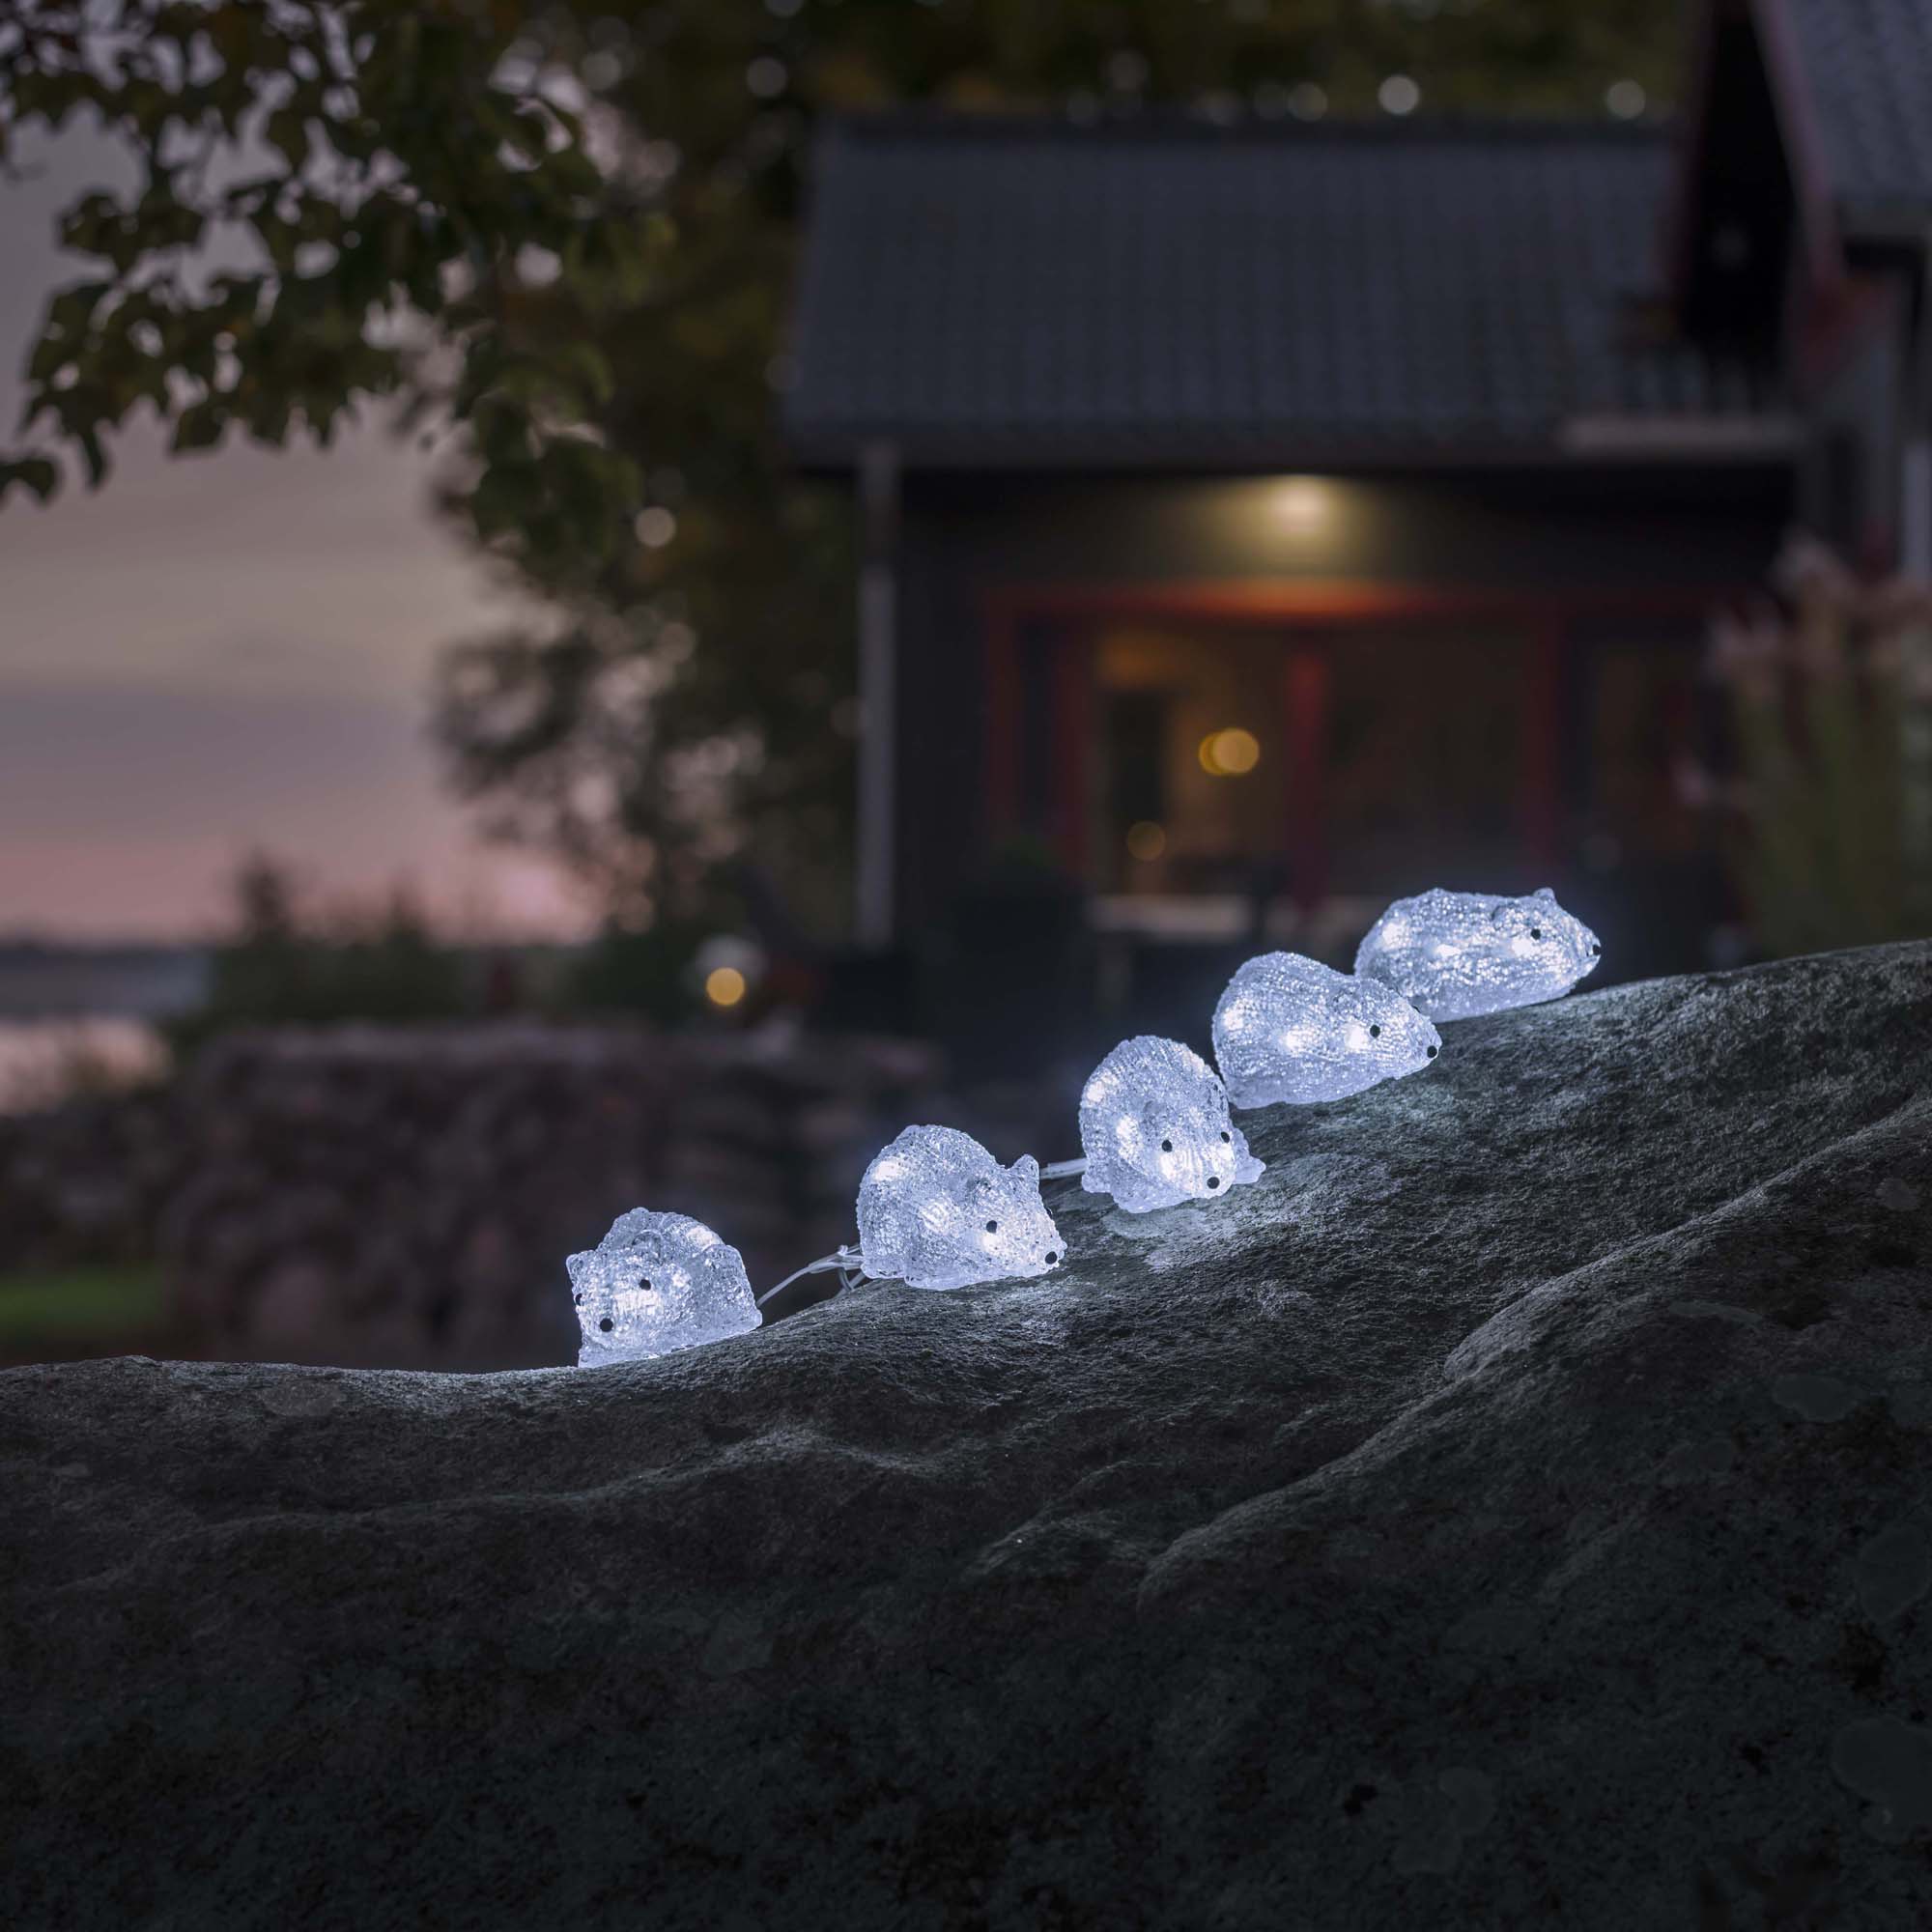 Figurina luminoasa Konstsmide LED Acrylic Set de 5 Soricei 40 LED-uri alb rece